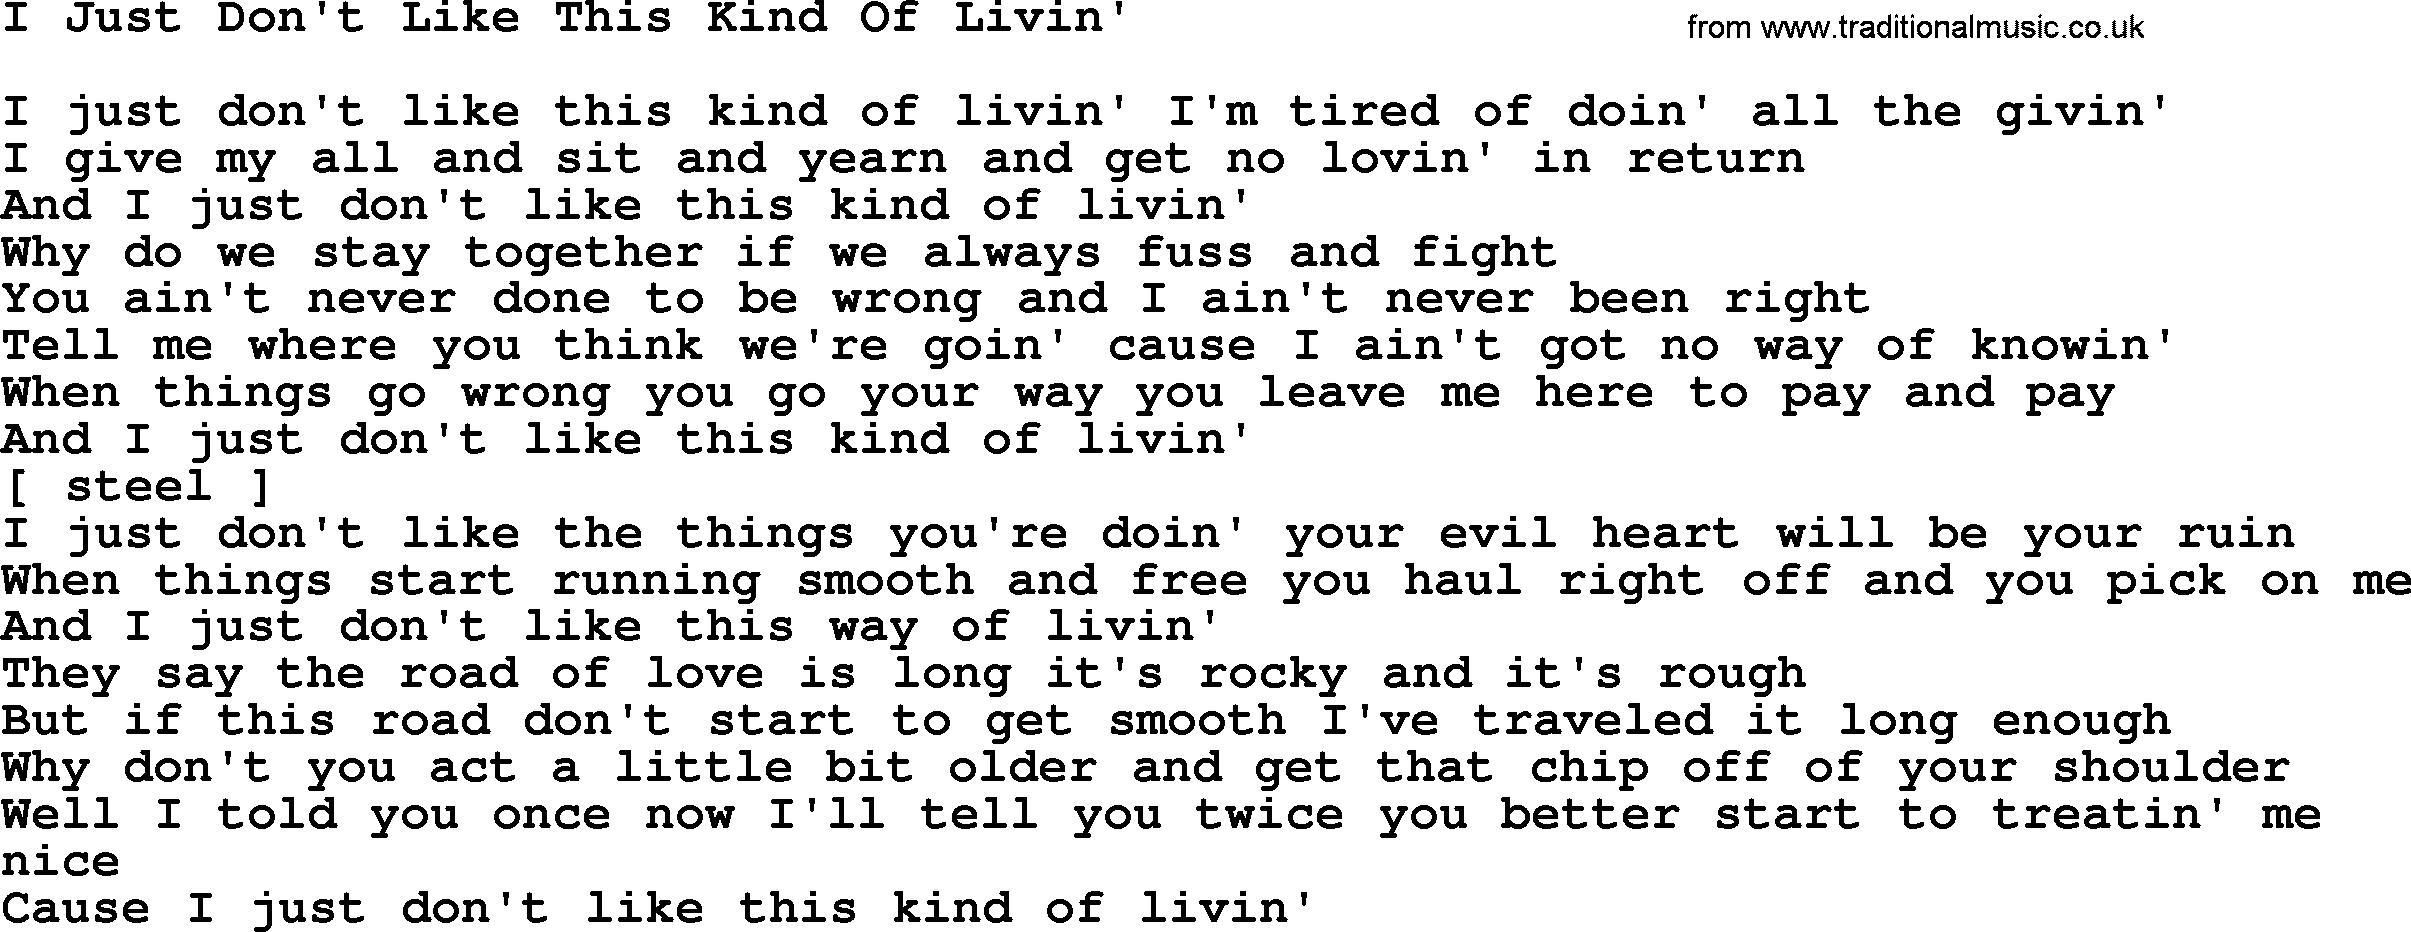 George Jones song: I Just Don't Like This Kind Of Livin', lyrics